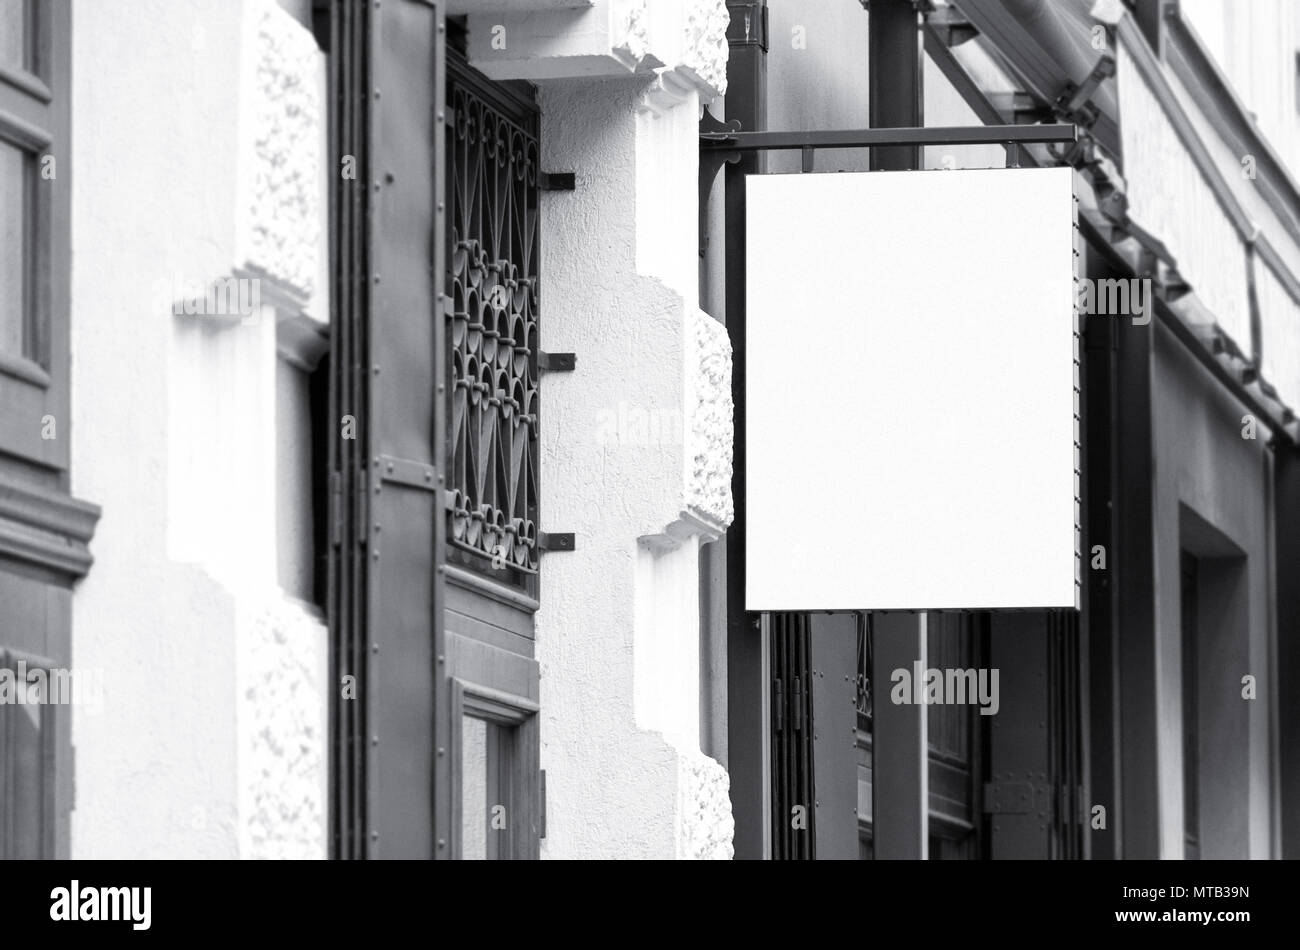 Quadrato bianco outdoor insegne commerciali mockup, in bianco e nero di architettura reale immagine Foto Stock